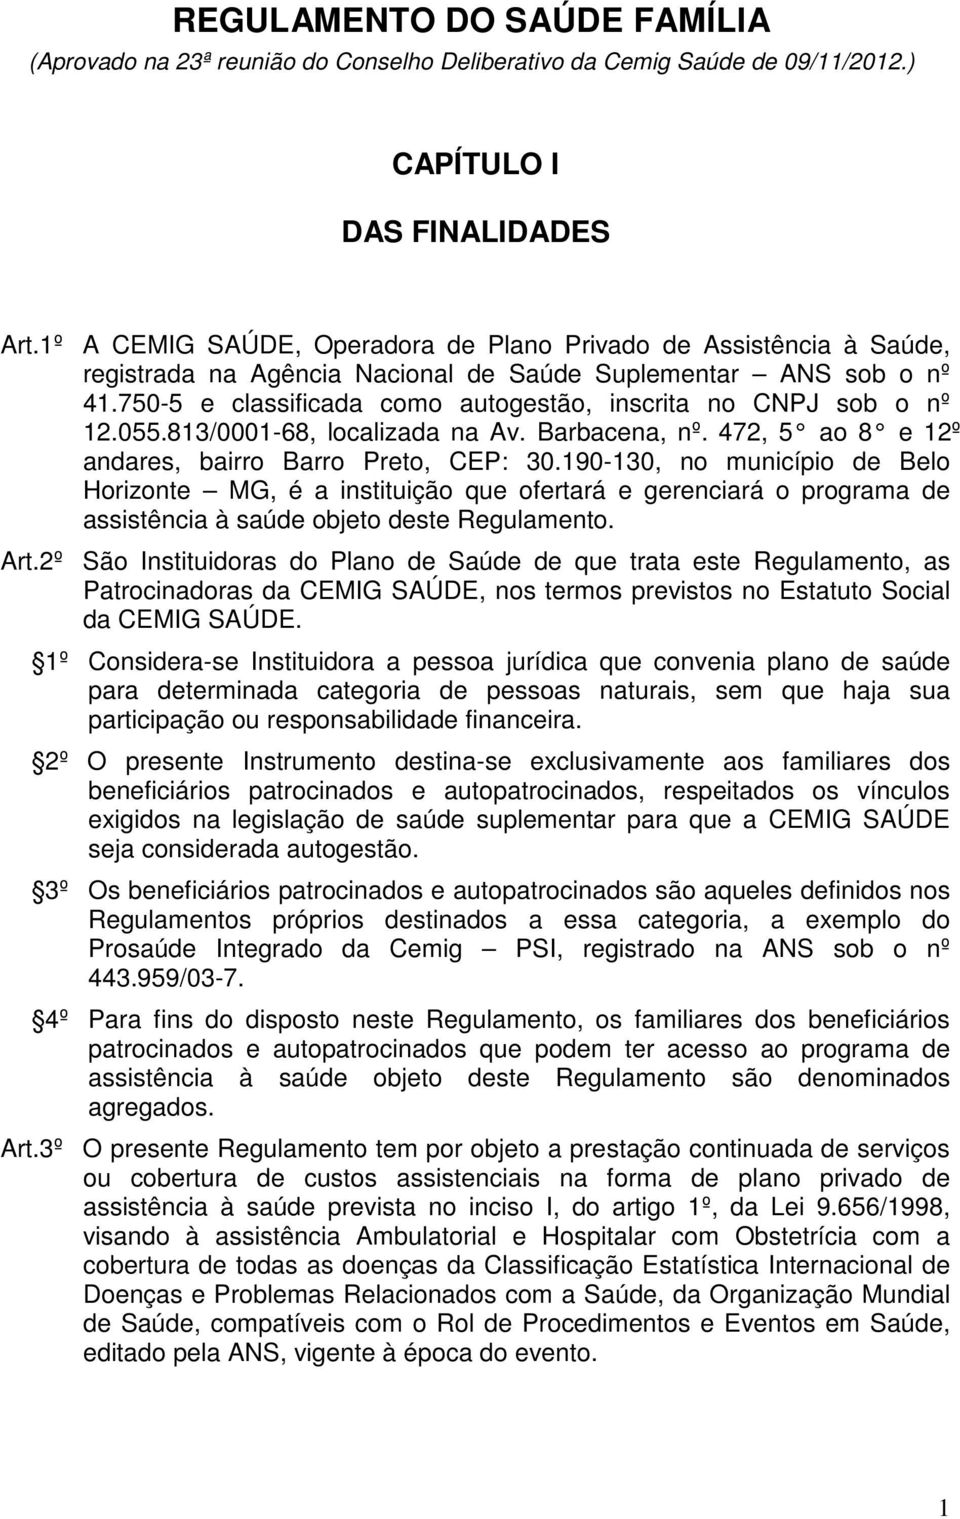 750-5 e classificada como autogestão, inscrita no CNPJ sob o nº 12.055.813/0001-68, localizada na Av. Barbacena, nº. 472, 5 ao 8 e 12º andares, bairro Barro Preto, CEP: 30.